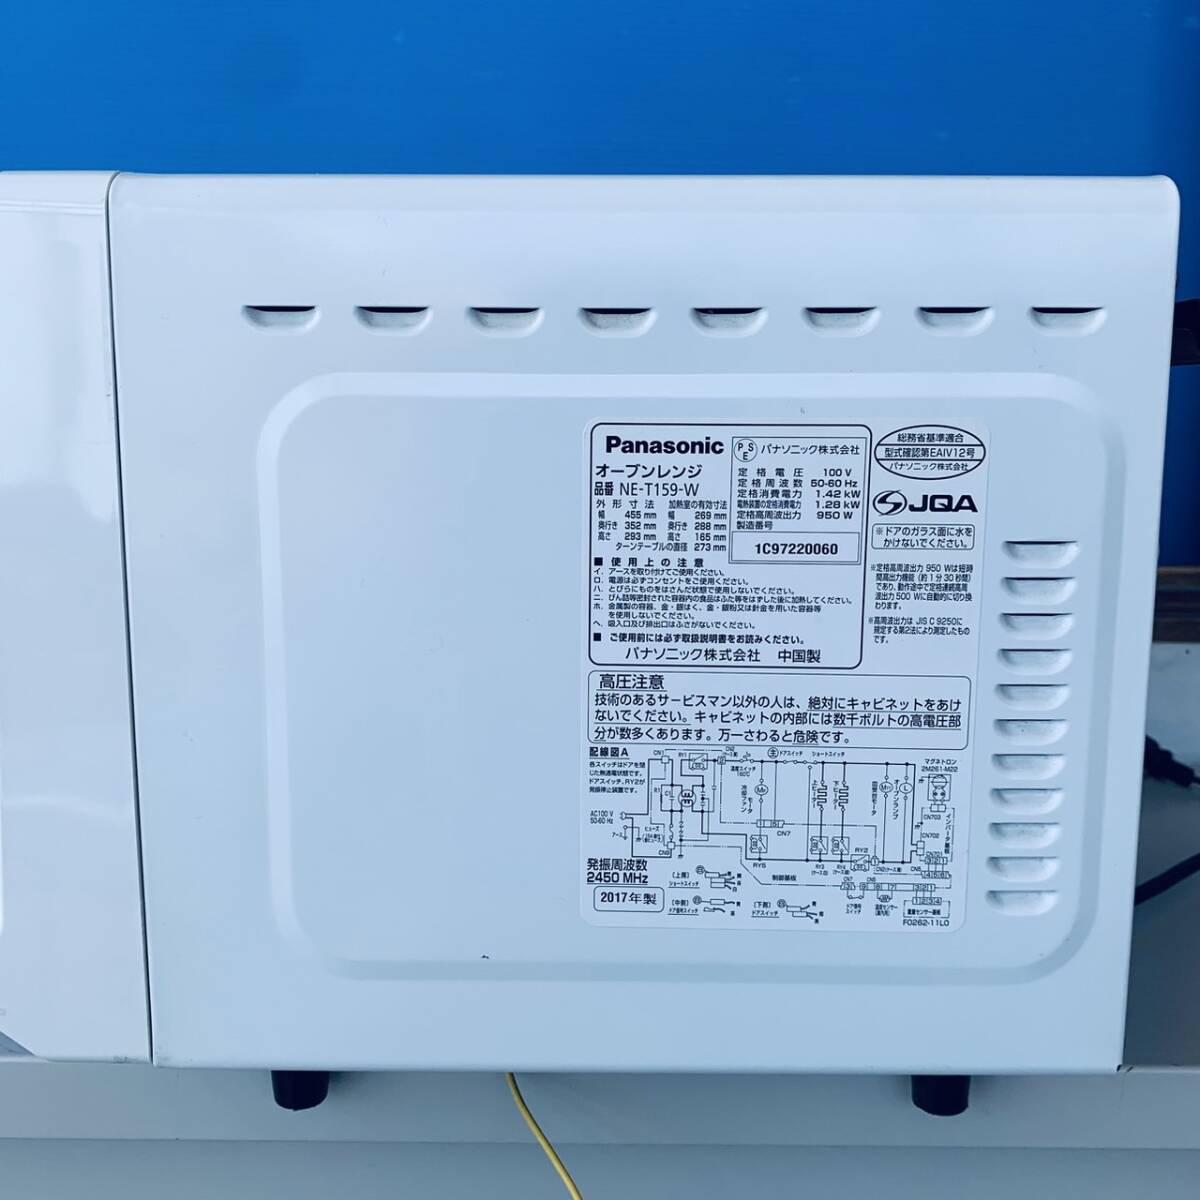 2017 год производства Panasonic Panasonic erek микроволновая печь NE-T159-W 15L белый 950W инвертер масса сенсор K3532